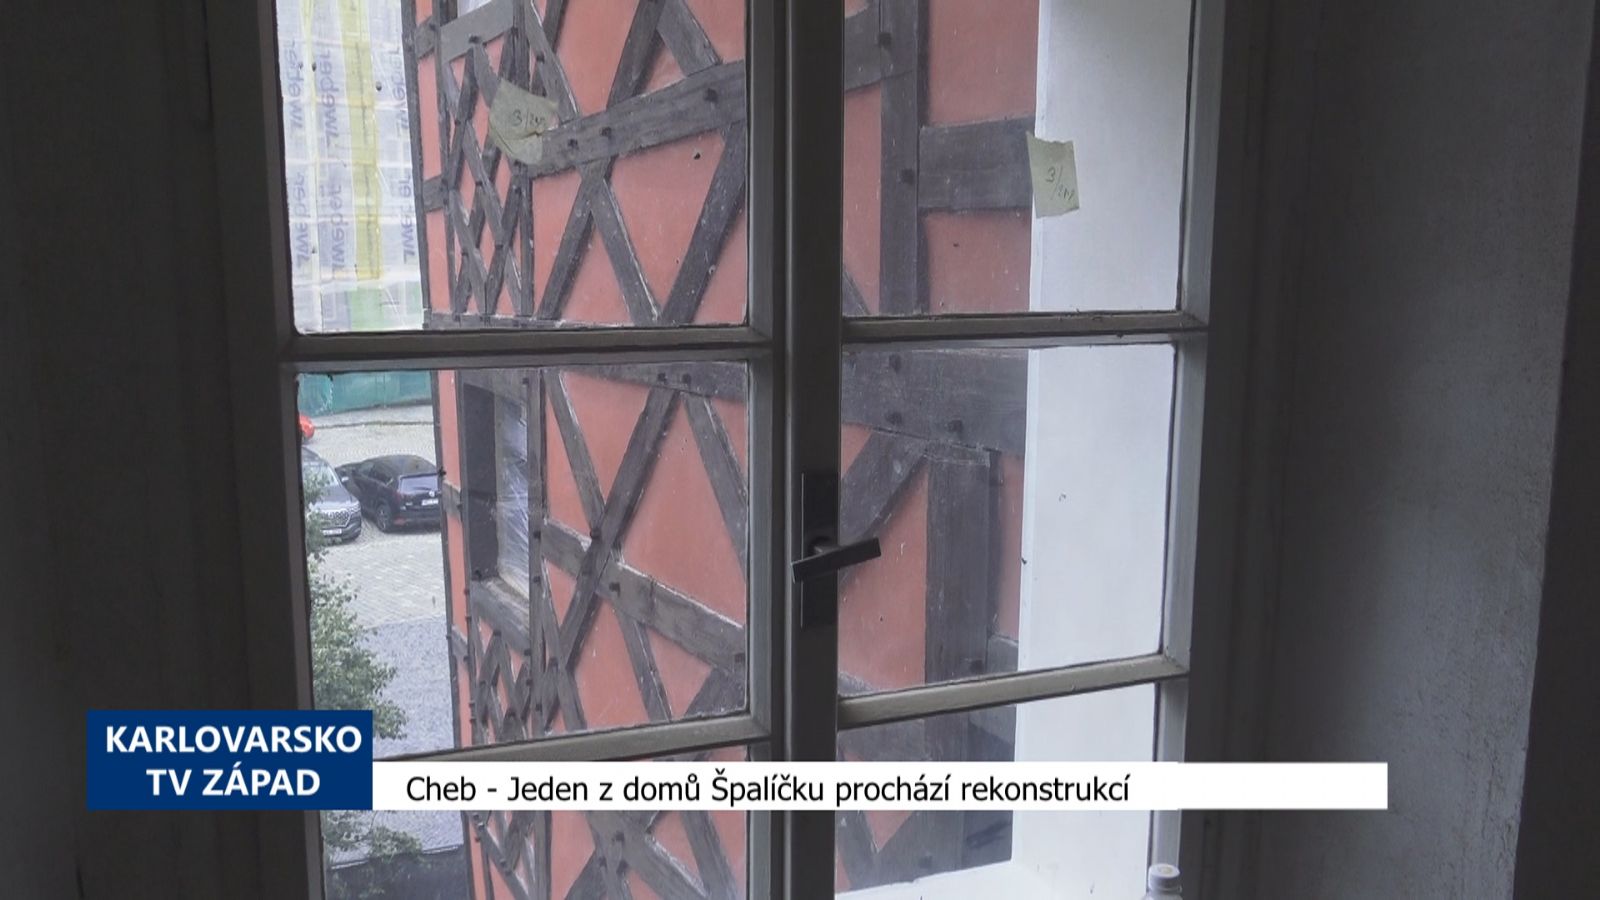 Cheb: Jeden z domů Špalíčku prochází rekonstrukcí (TV Západ)